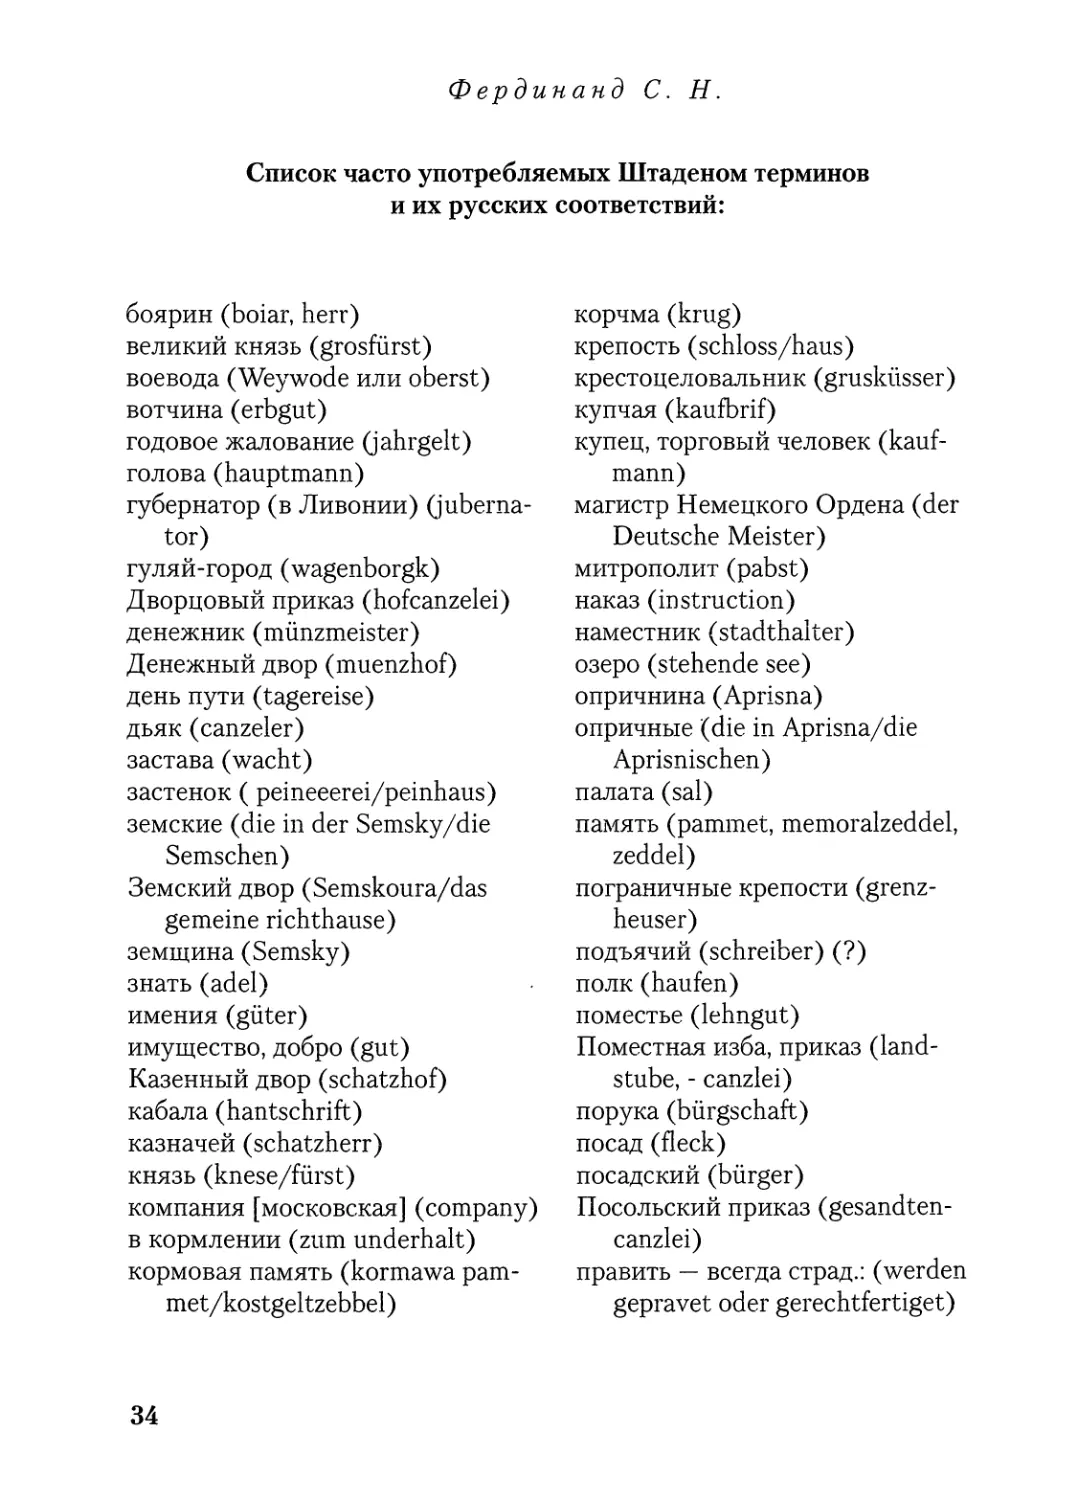 Список часто употребляемых Штаденом терминов и их русских соответствий